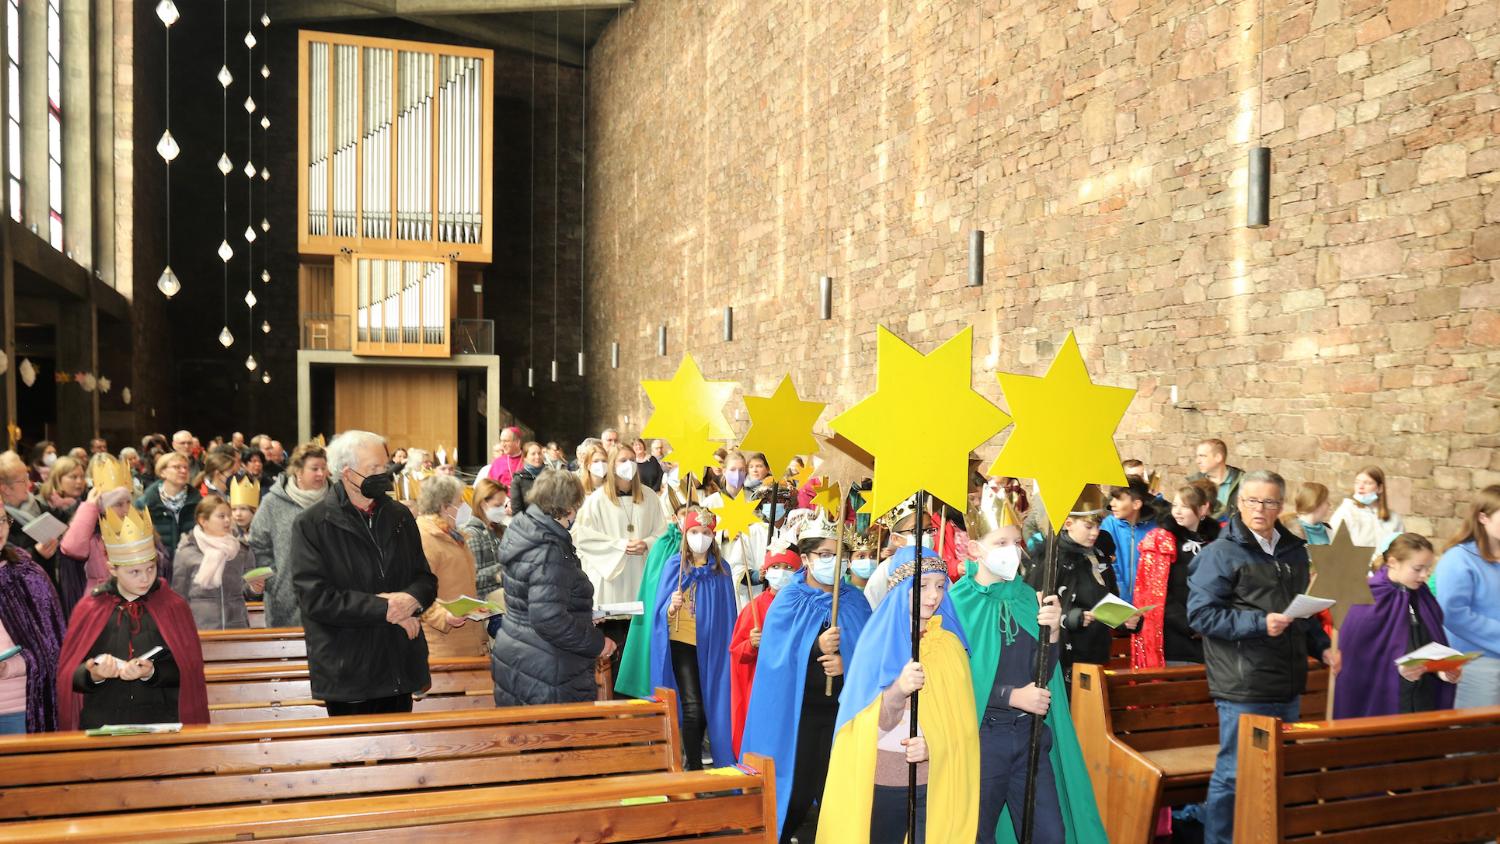 Die Aussendungsfeier der Aktion Dreikönigssingen fand in der Dürener Annakirche statt. Etwa 200 Sternsinger aus dem gesamten Bistum nahmen daran teil. (c) Stephan Johnen